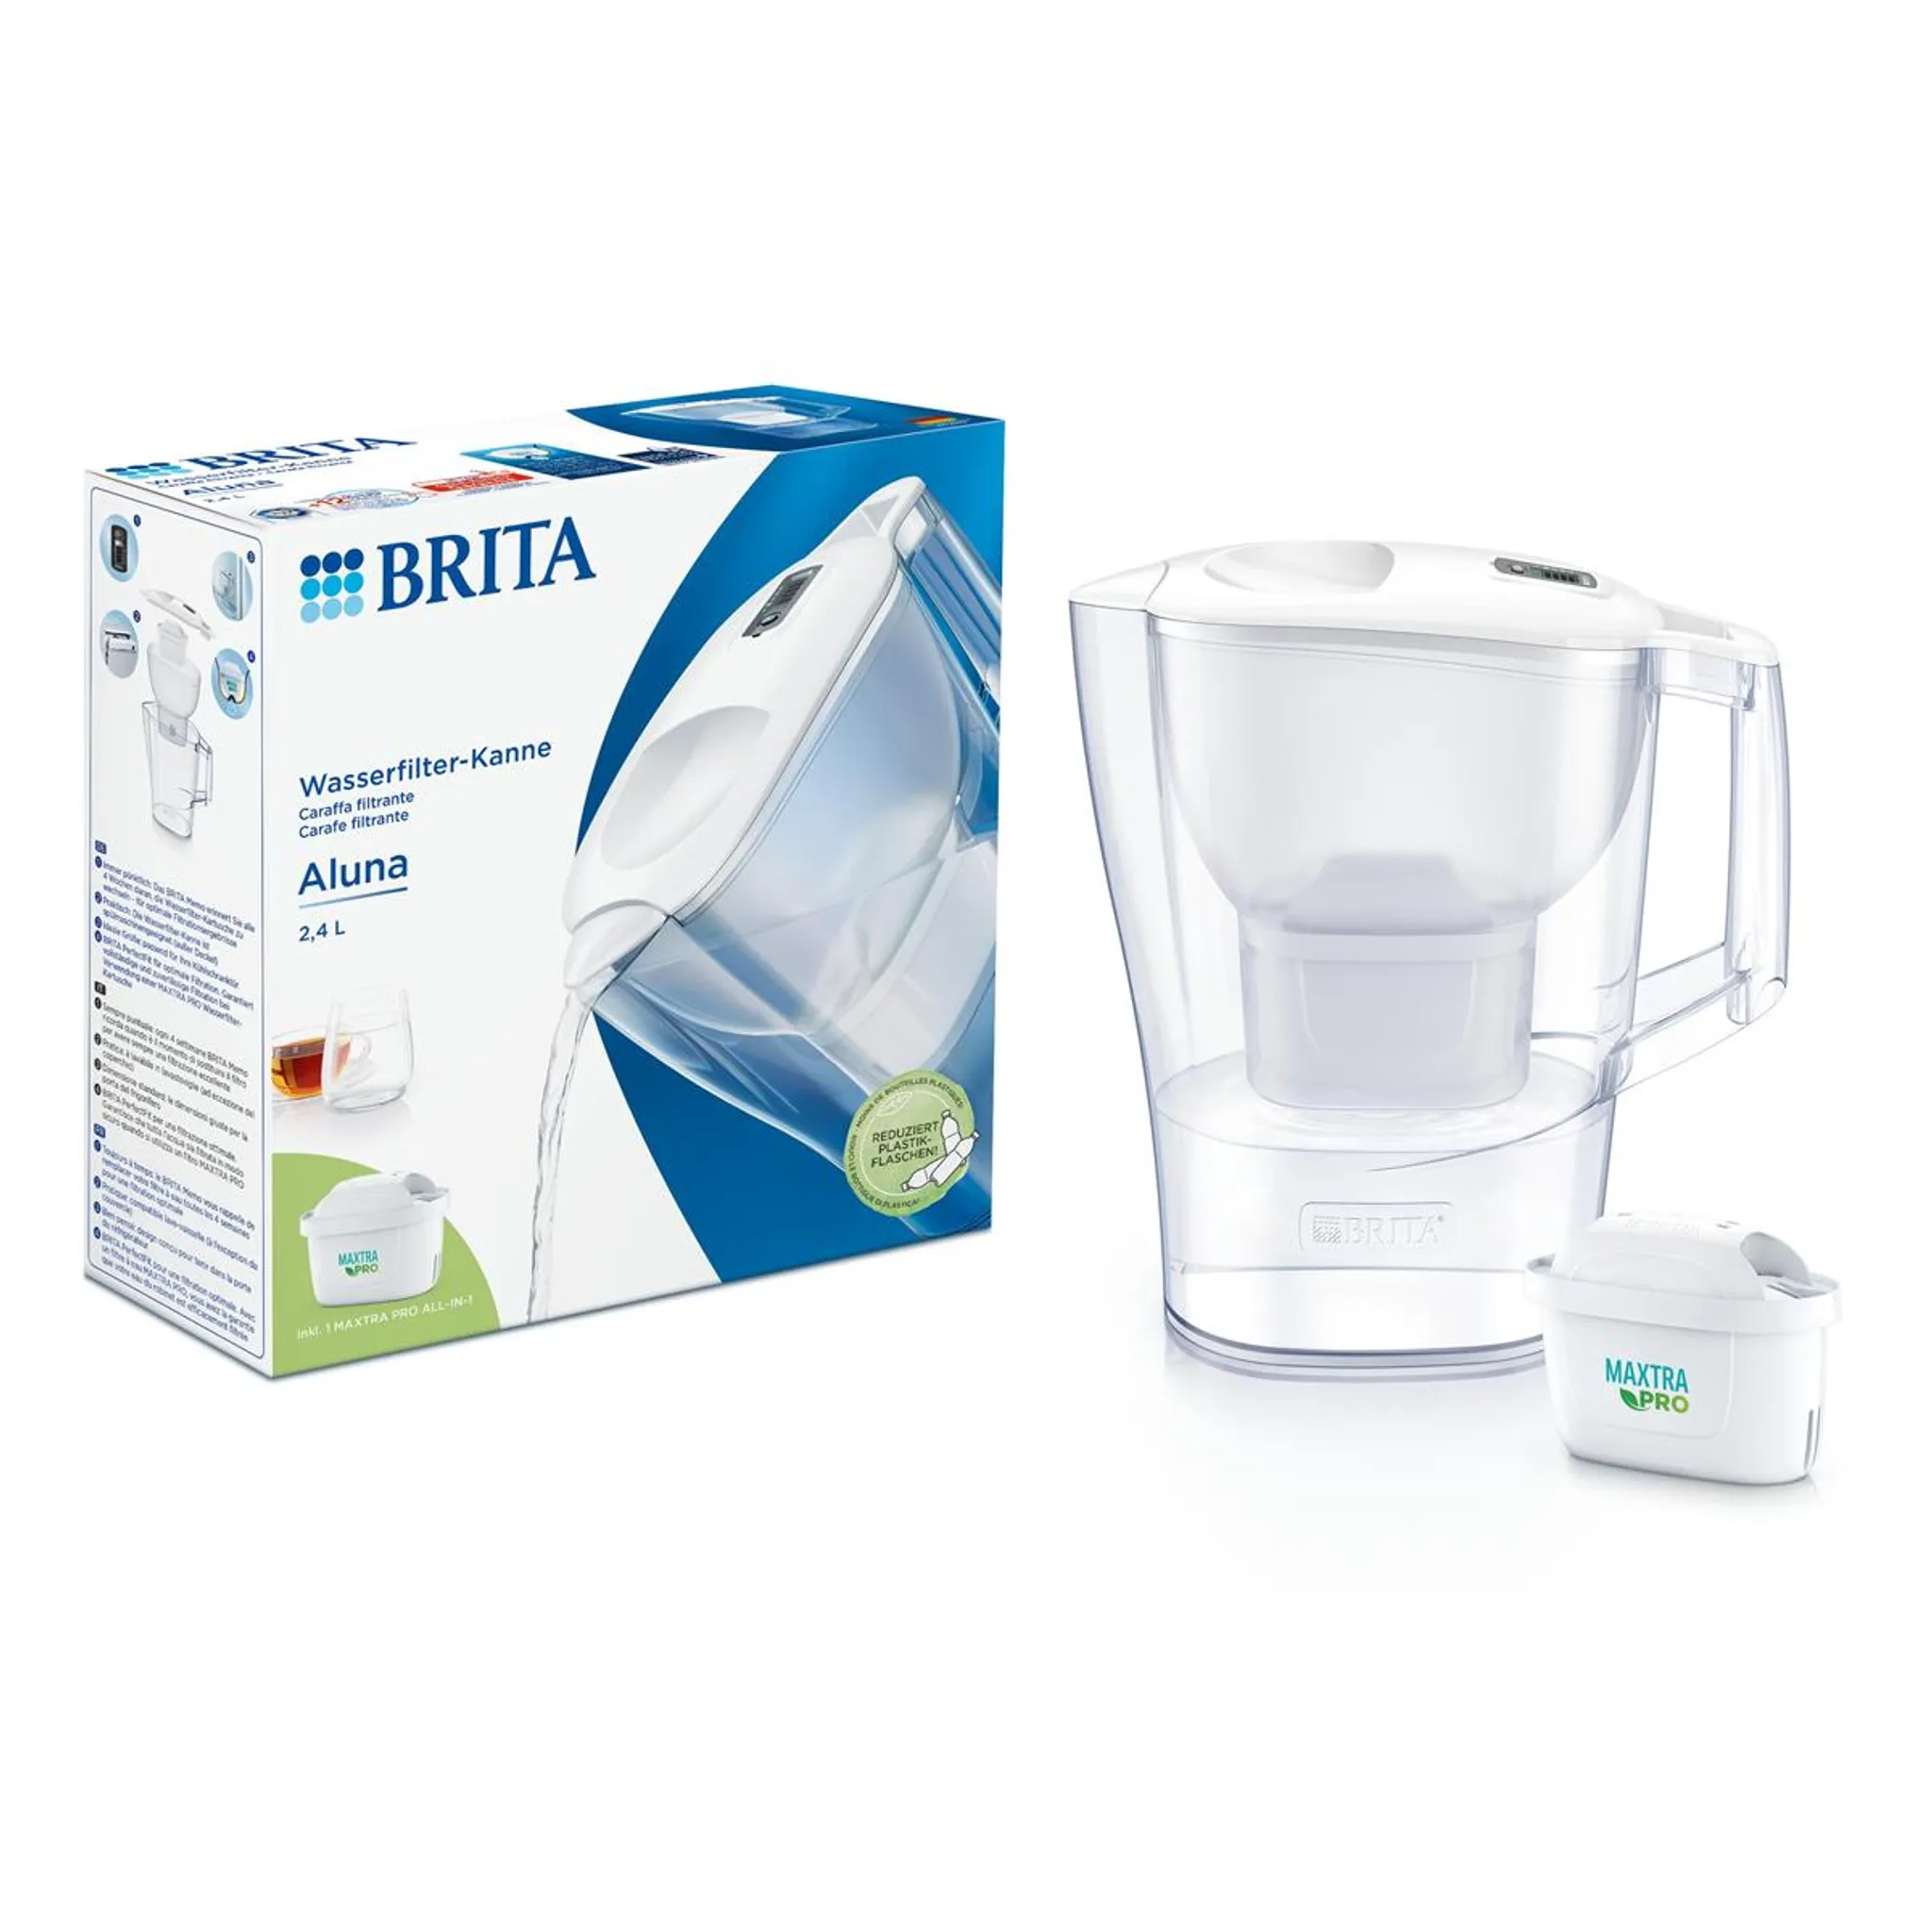 Brita Wasserfilter-Kanne Aluna weiß 2,4L